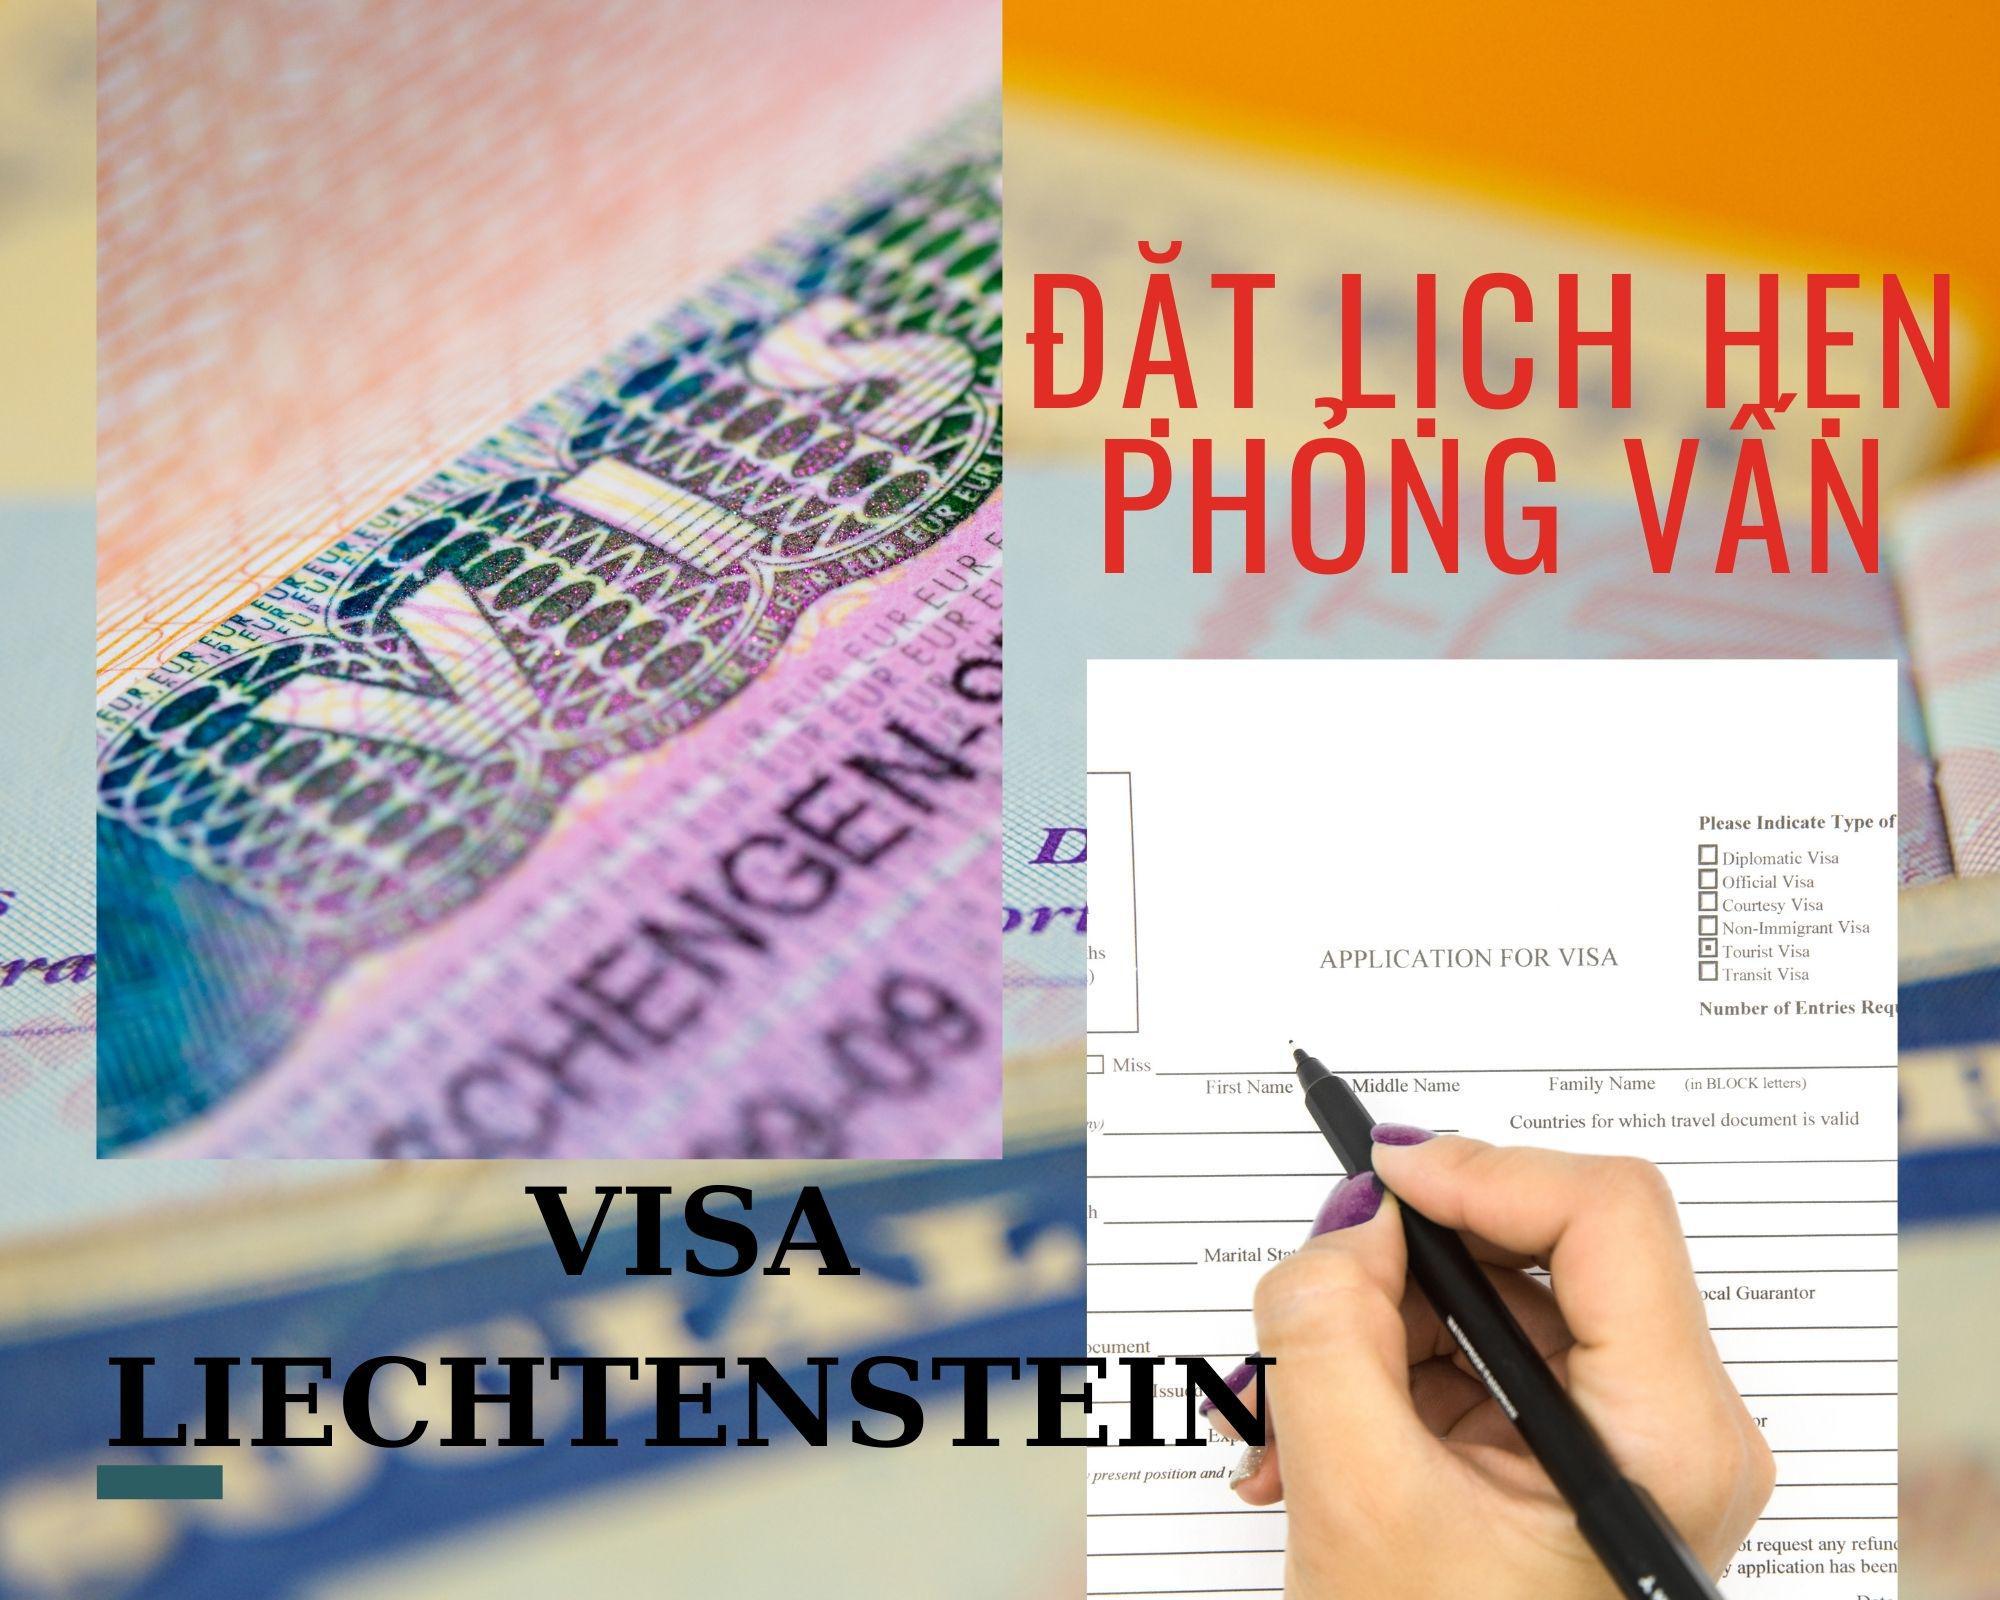 Dịch vụ đặt lịch hẹn phỏng visa visa Liechteinstein